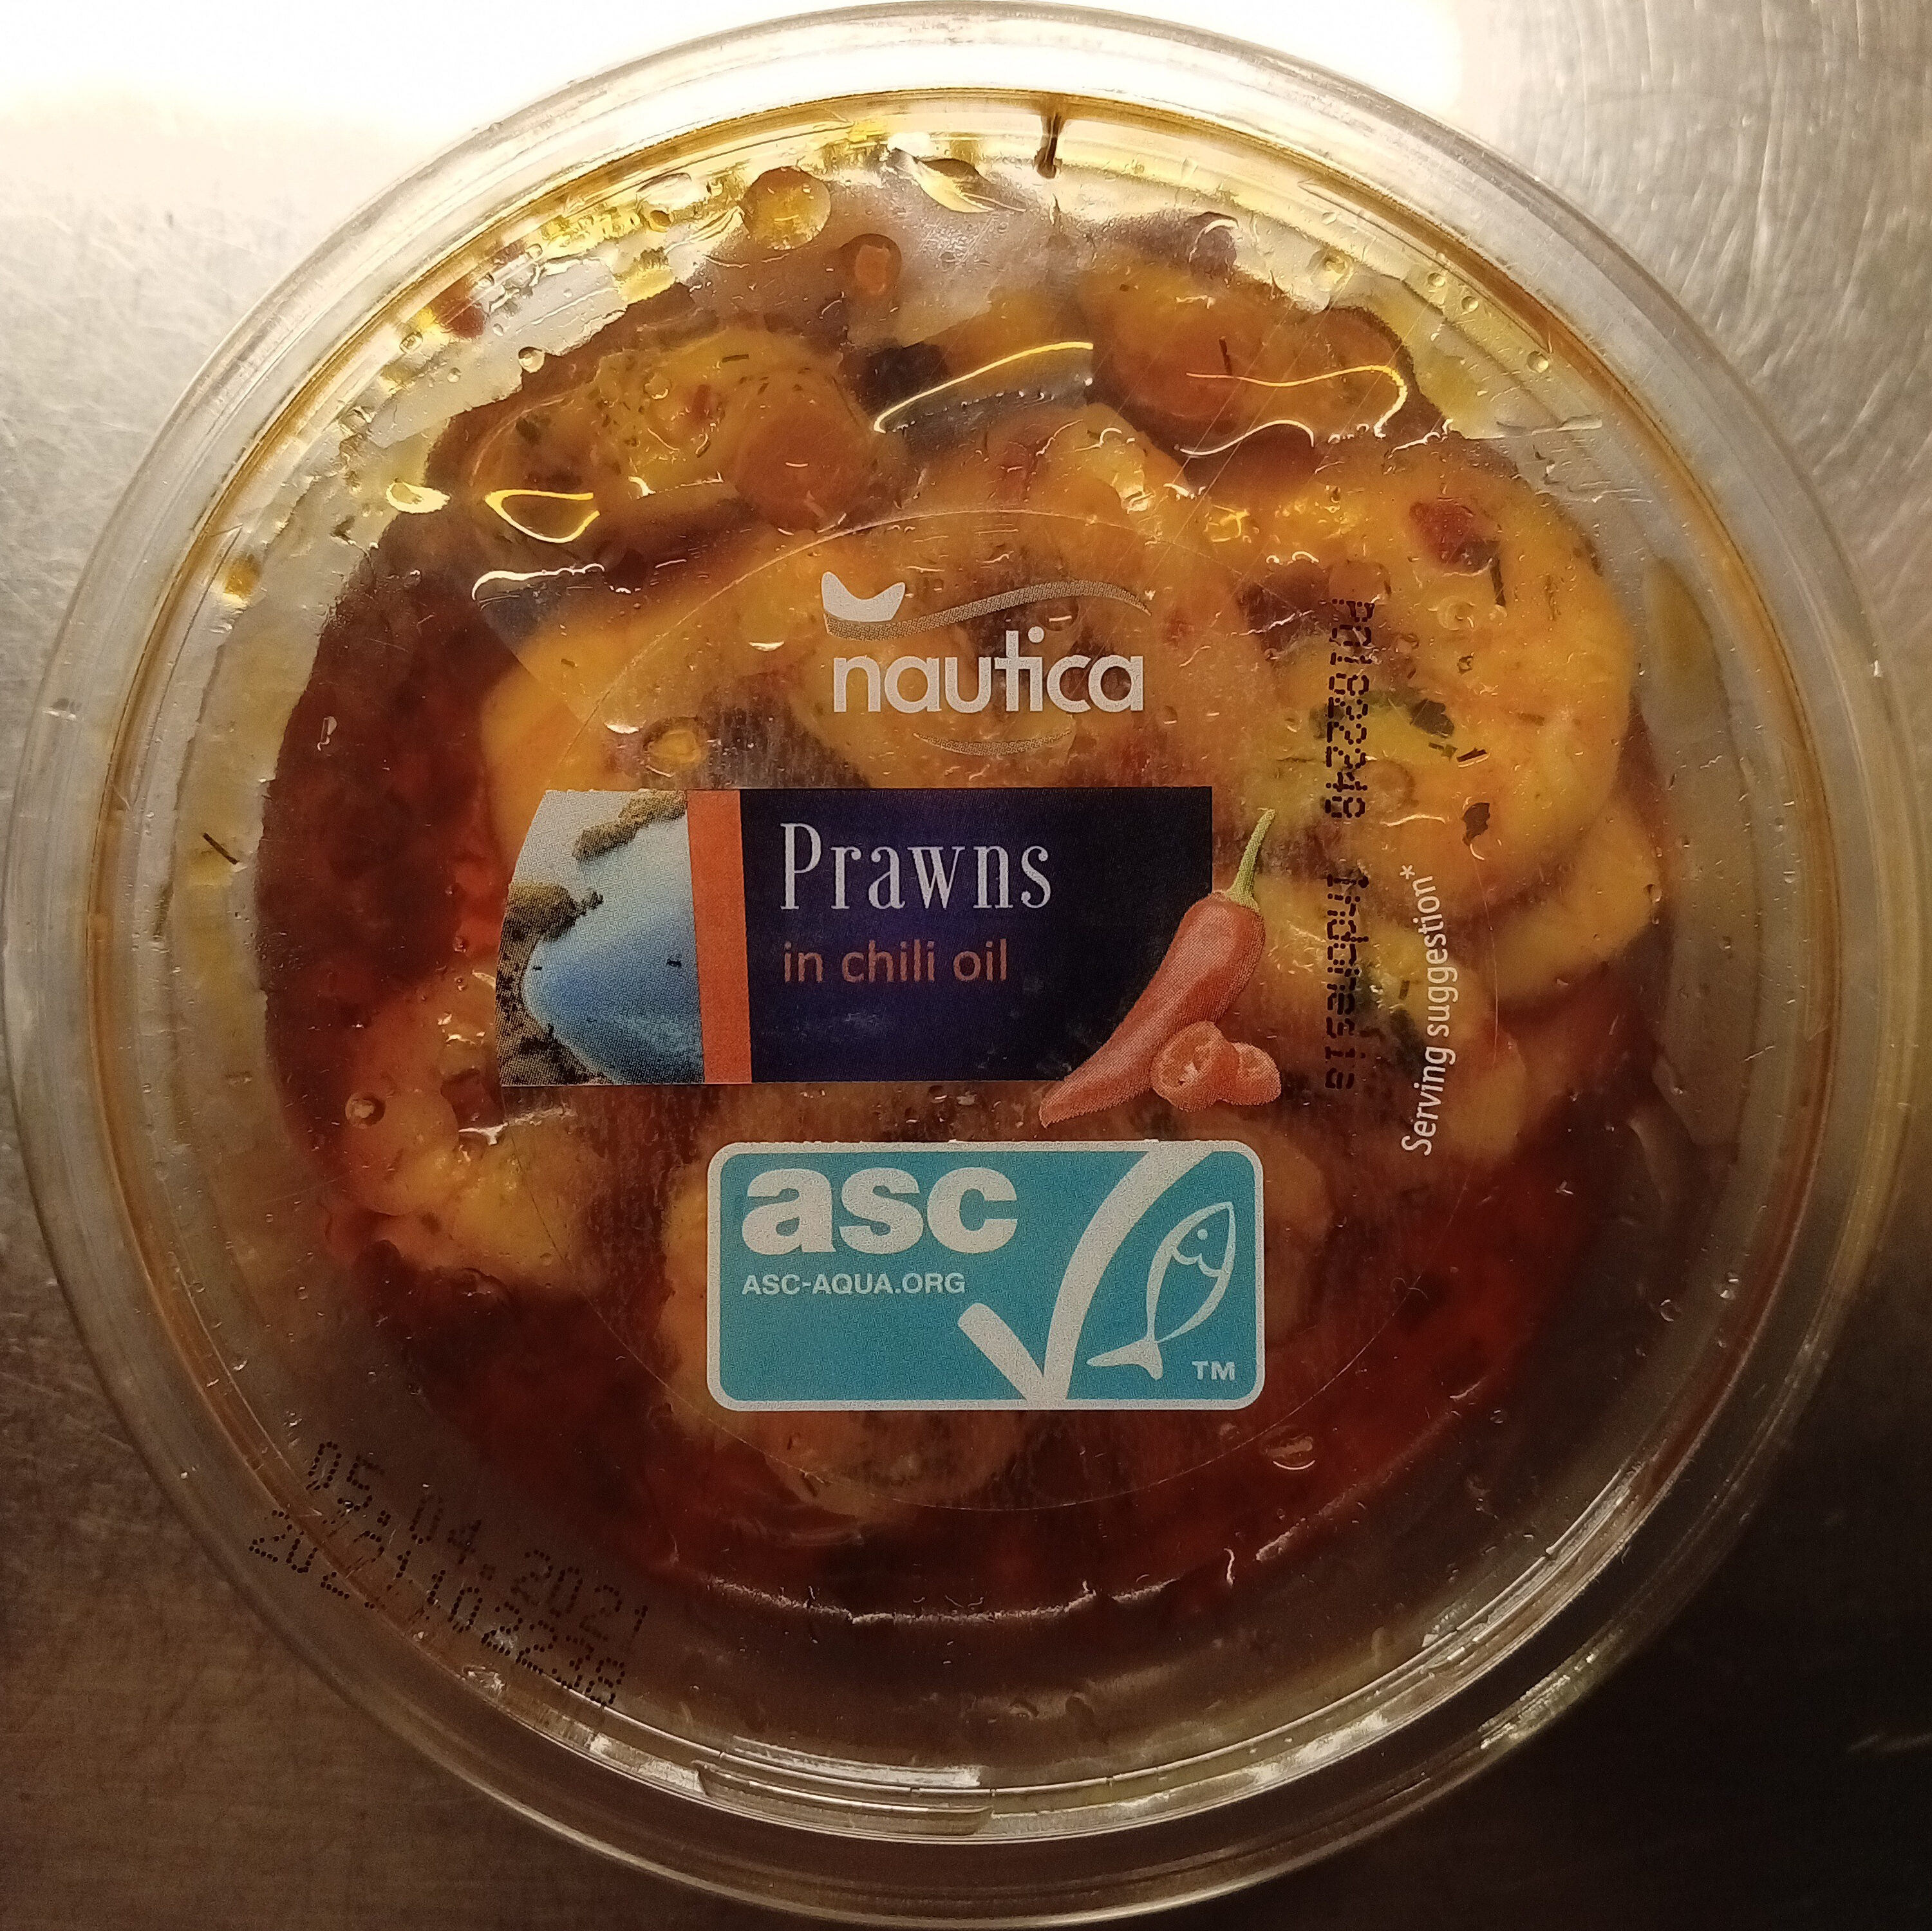 Crevettes dans de l'huile au piment - Produkt - sv